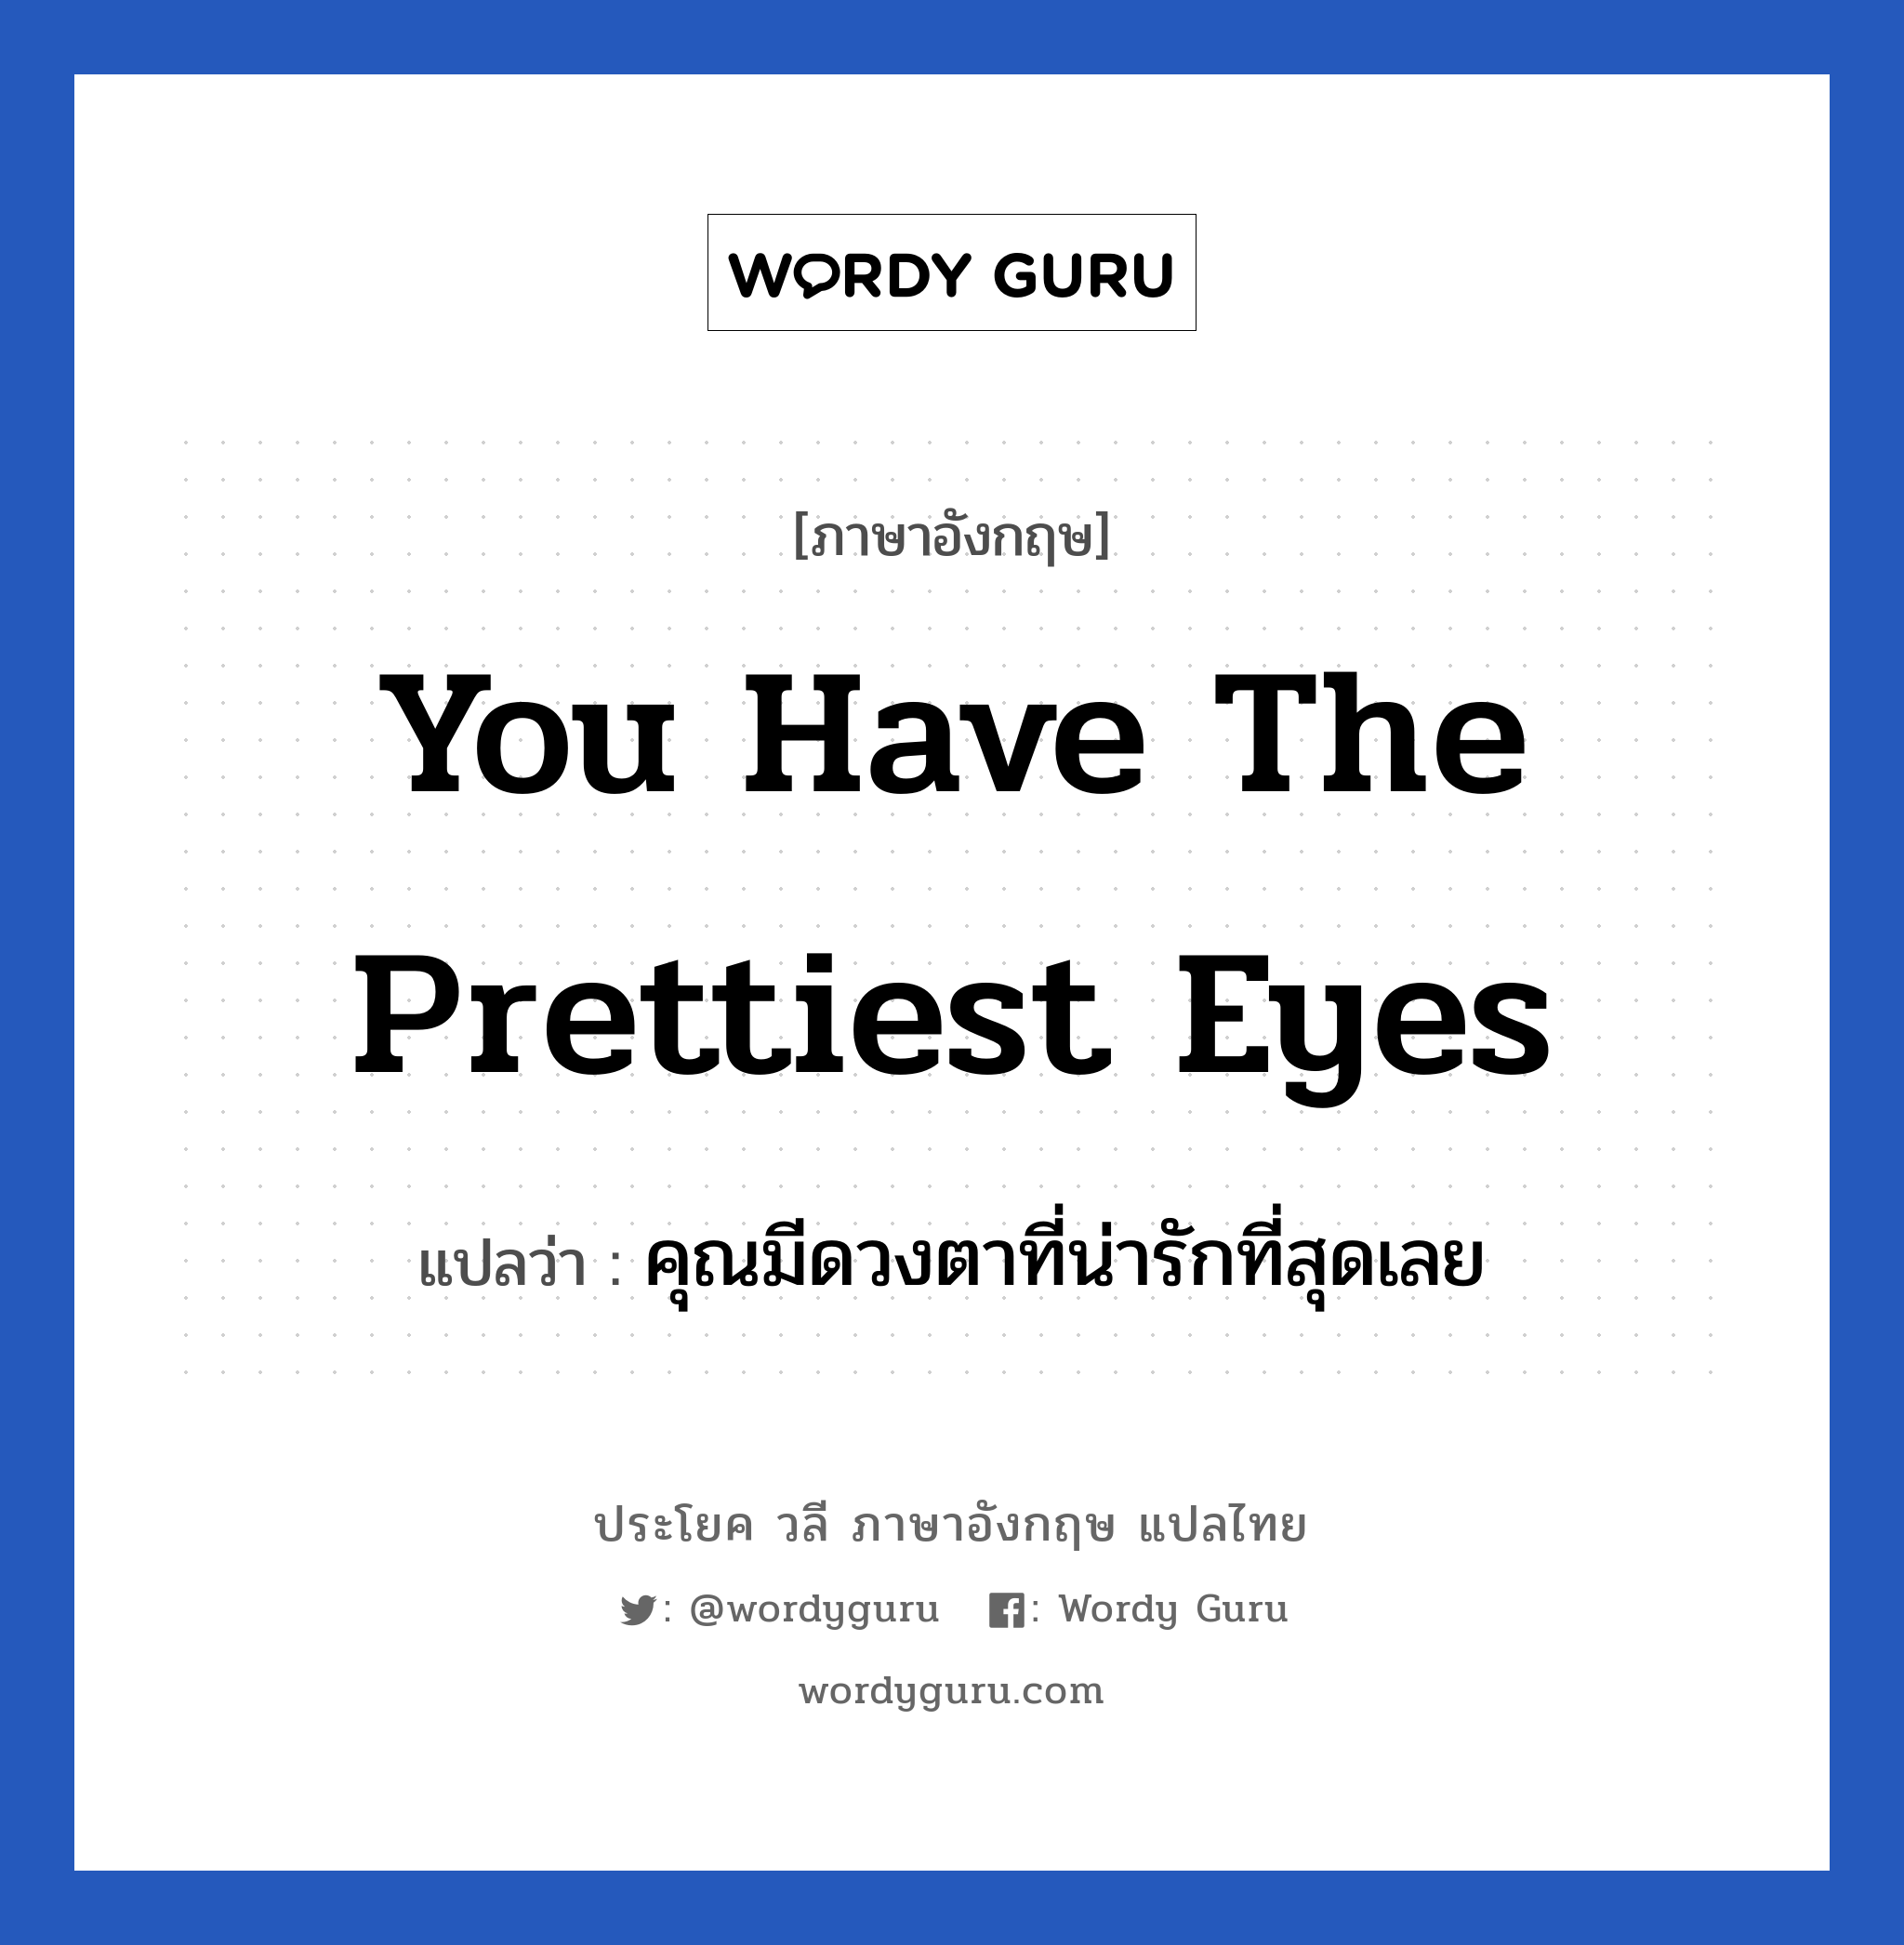 คุณมีดวงตาที่น่ารักที่สุดเลย ภาษาอังกฤษ?, วลีภาษาอังกฤษ คุณมีดวงตาที่น่ารักที่สุดเลย แปลว่า You have the prettiest eyes หมวด คำชมเชย